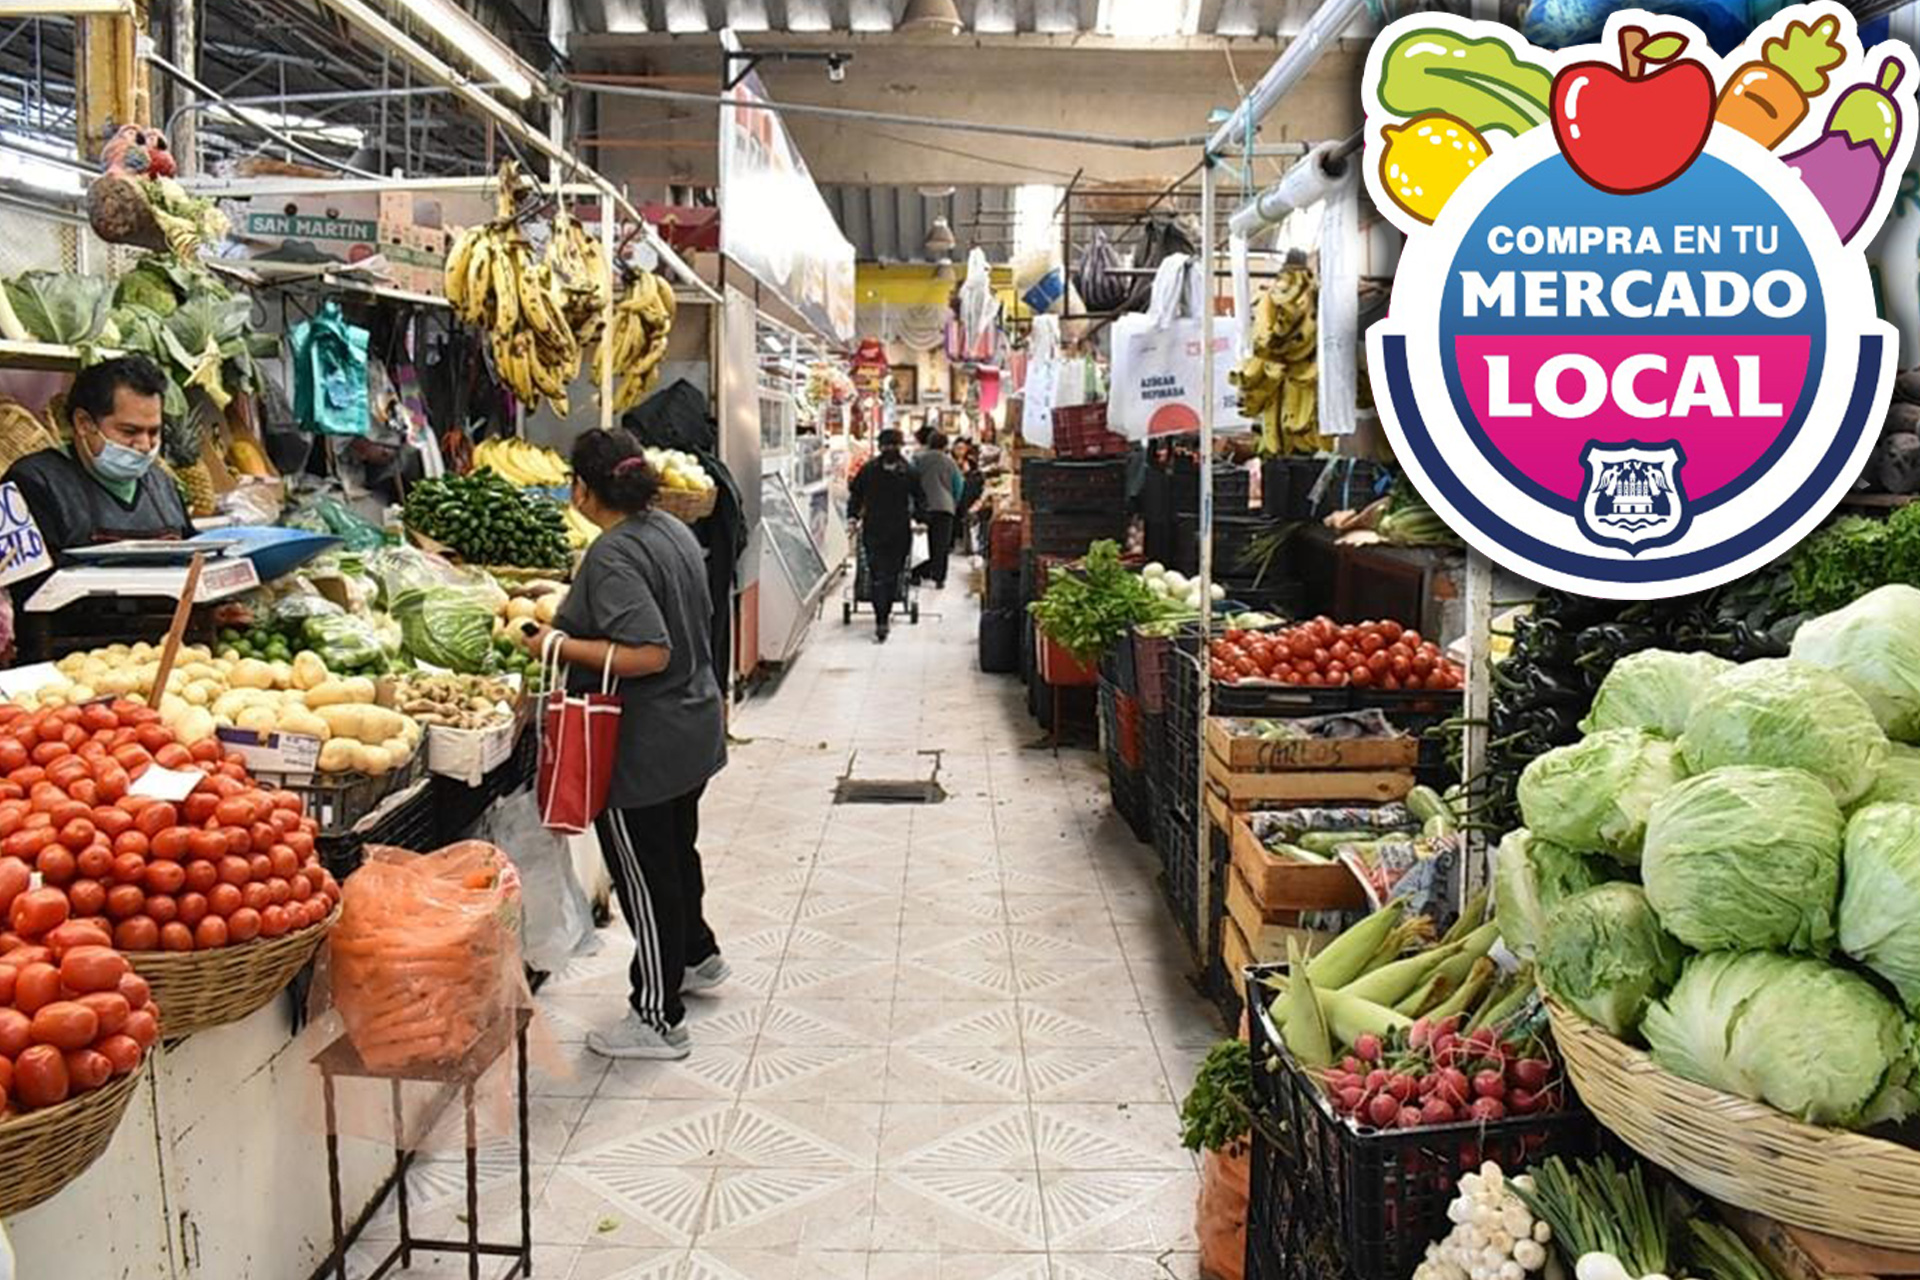 “Compra en tu Mercado Local” una iniciativa para afrontar la cuesta de enero